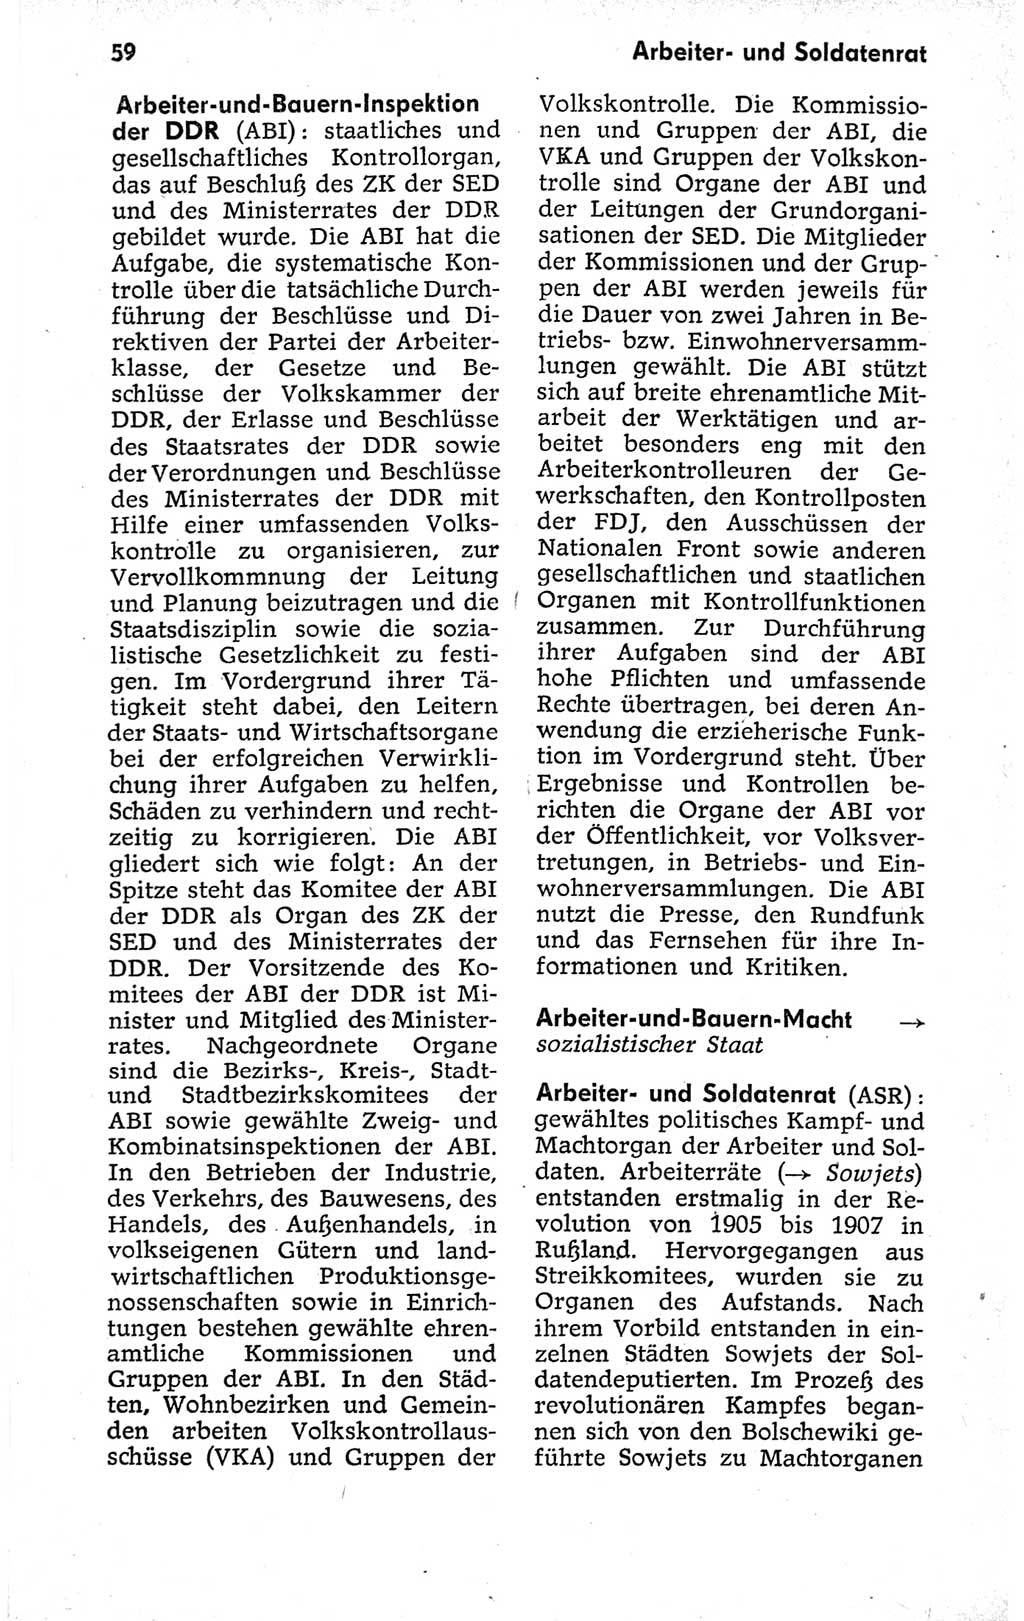 Kleines politisches Wörterbuch [Deutsche Demokratische Republik (DDR)] 1973, Seite 59 (Kl. pol. Wb. DDR 1973, S. 59)